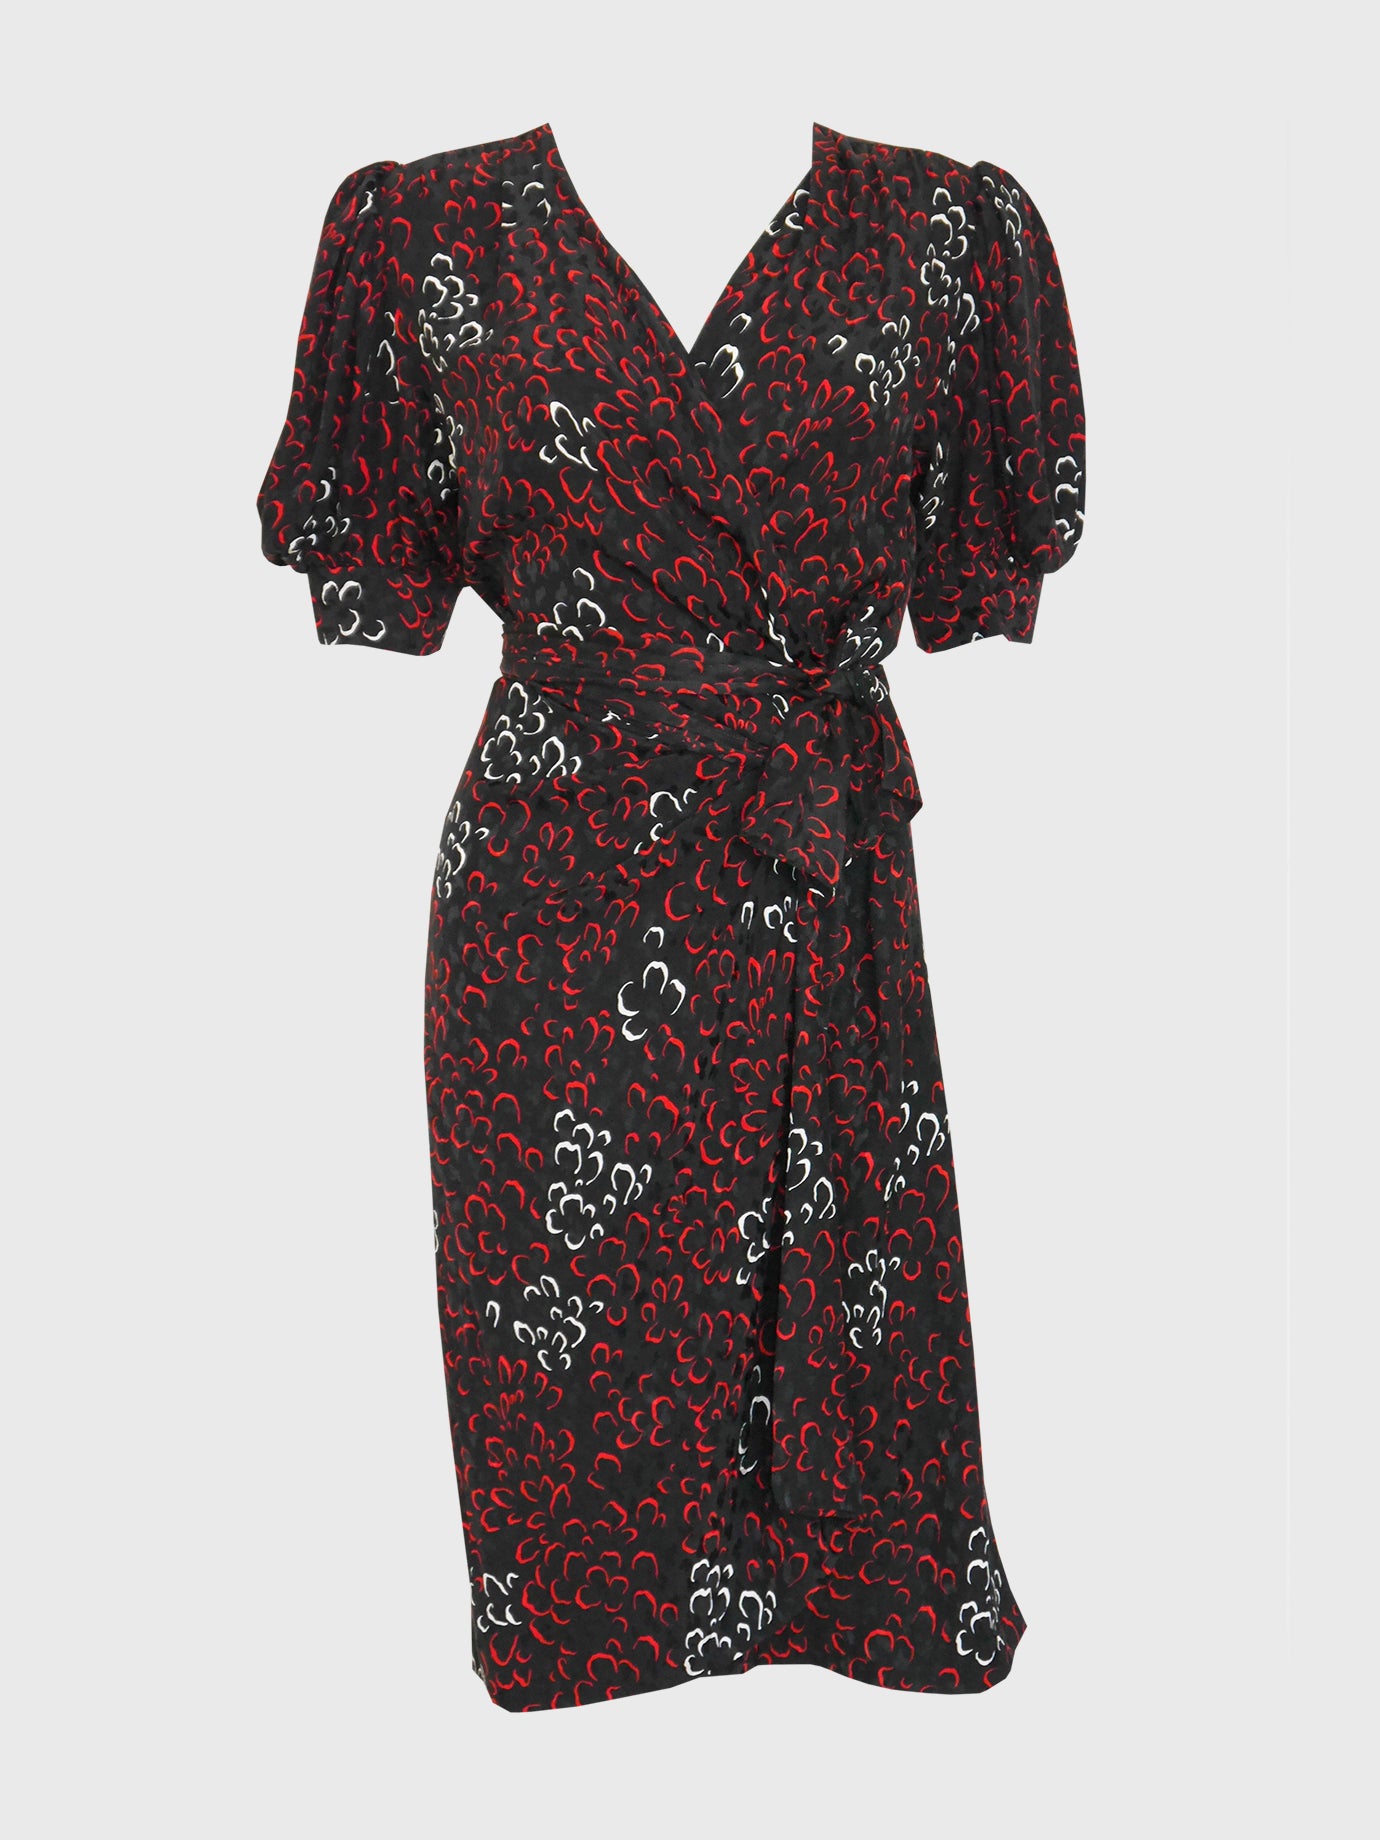 YVES SAINT LAURENT 1970s 1980s Vintage Silk Wrap Dress